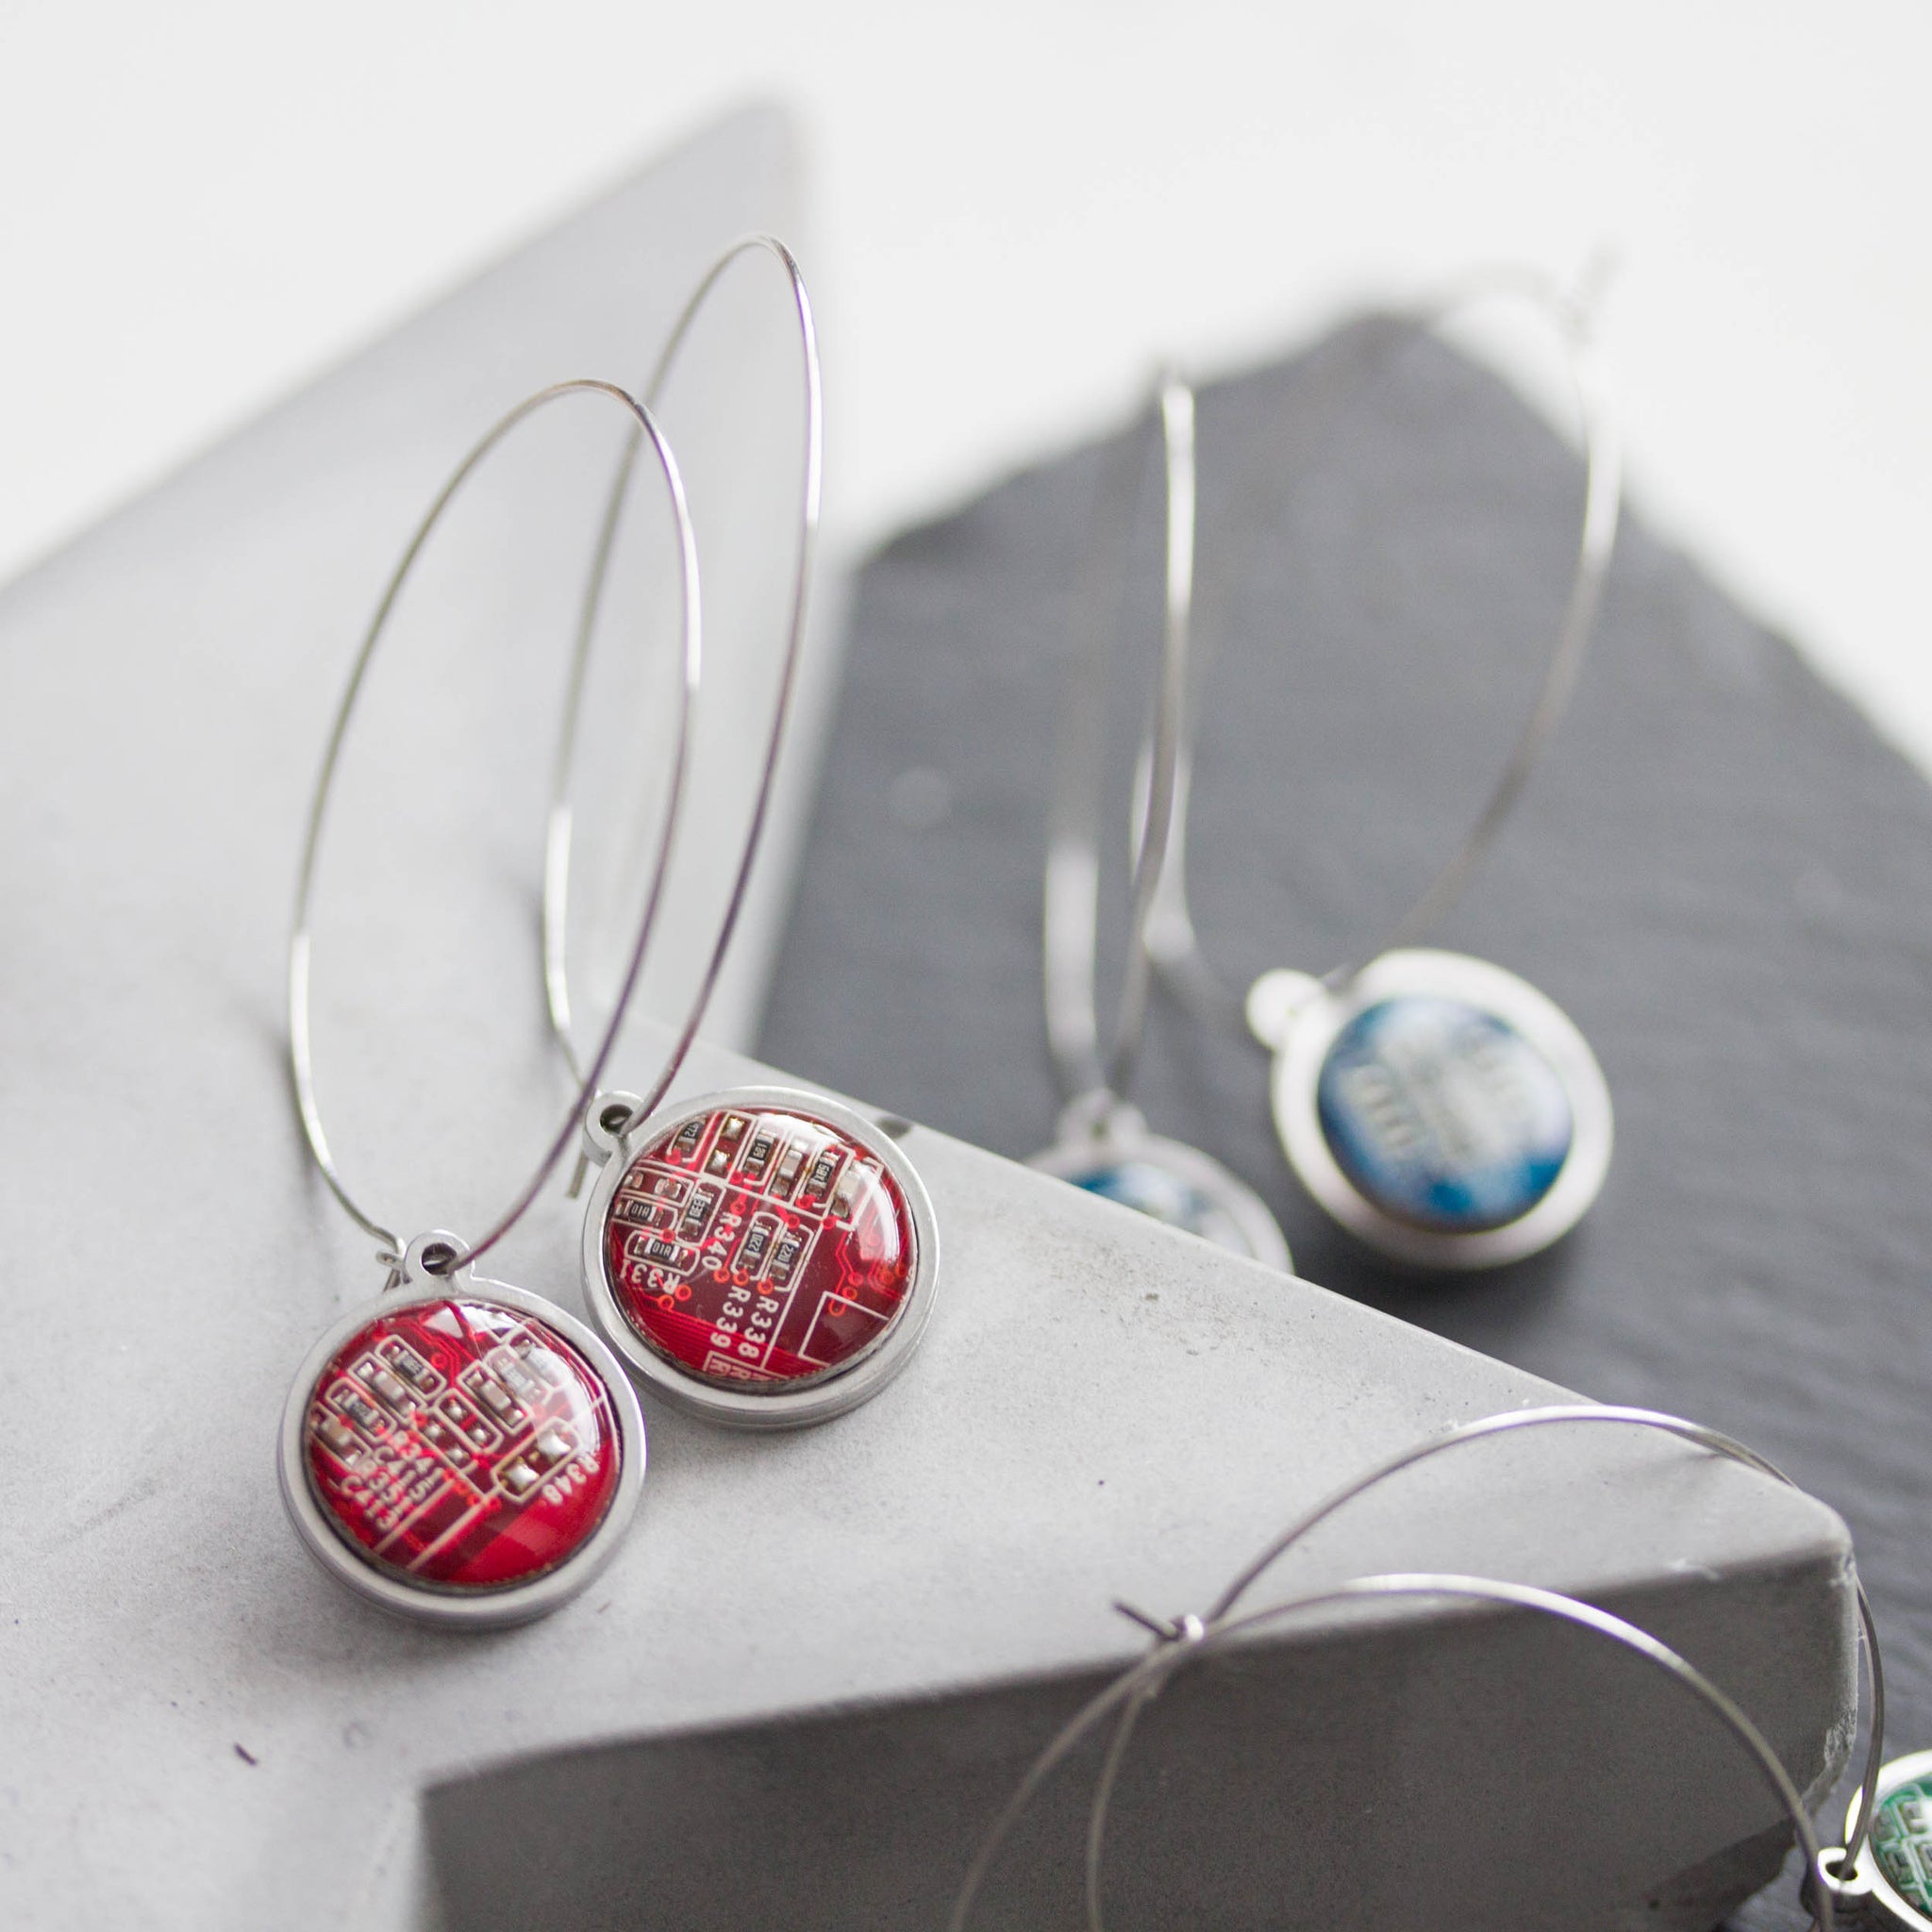 Hoop earrings with 15mm round circuit board pendants, stainless steel